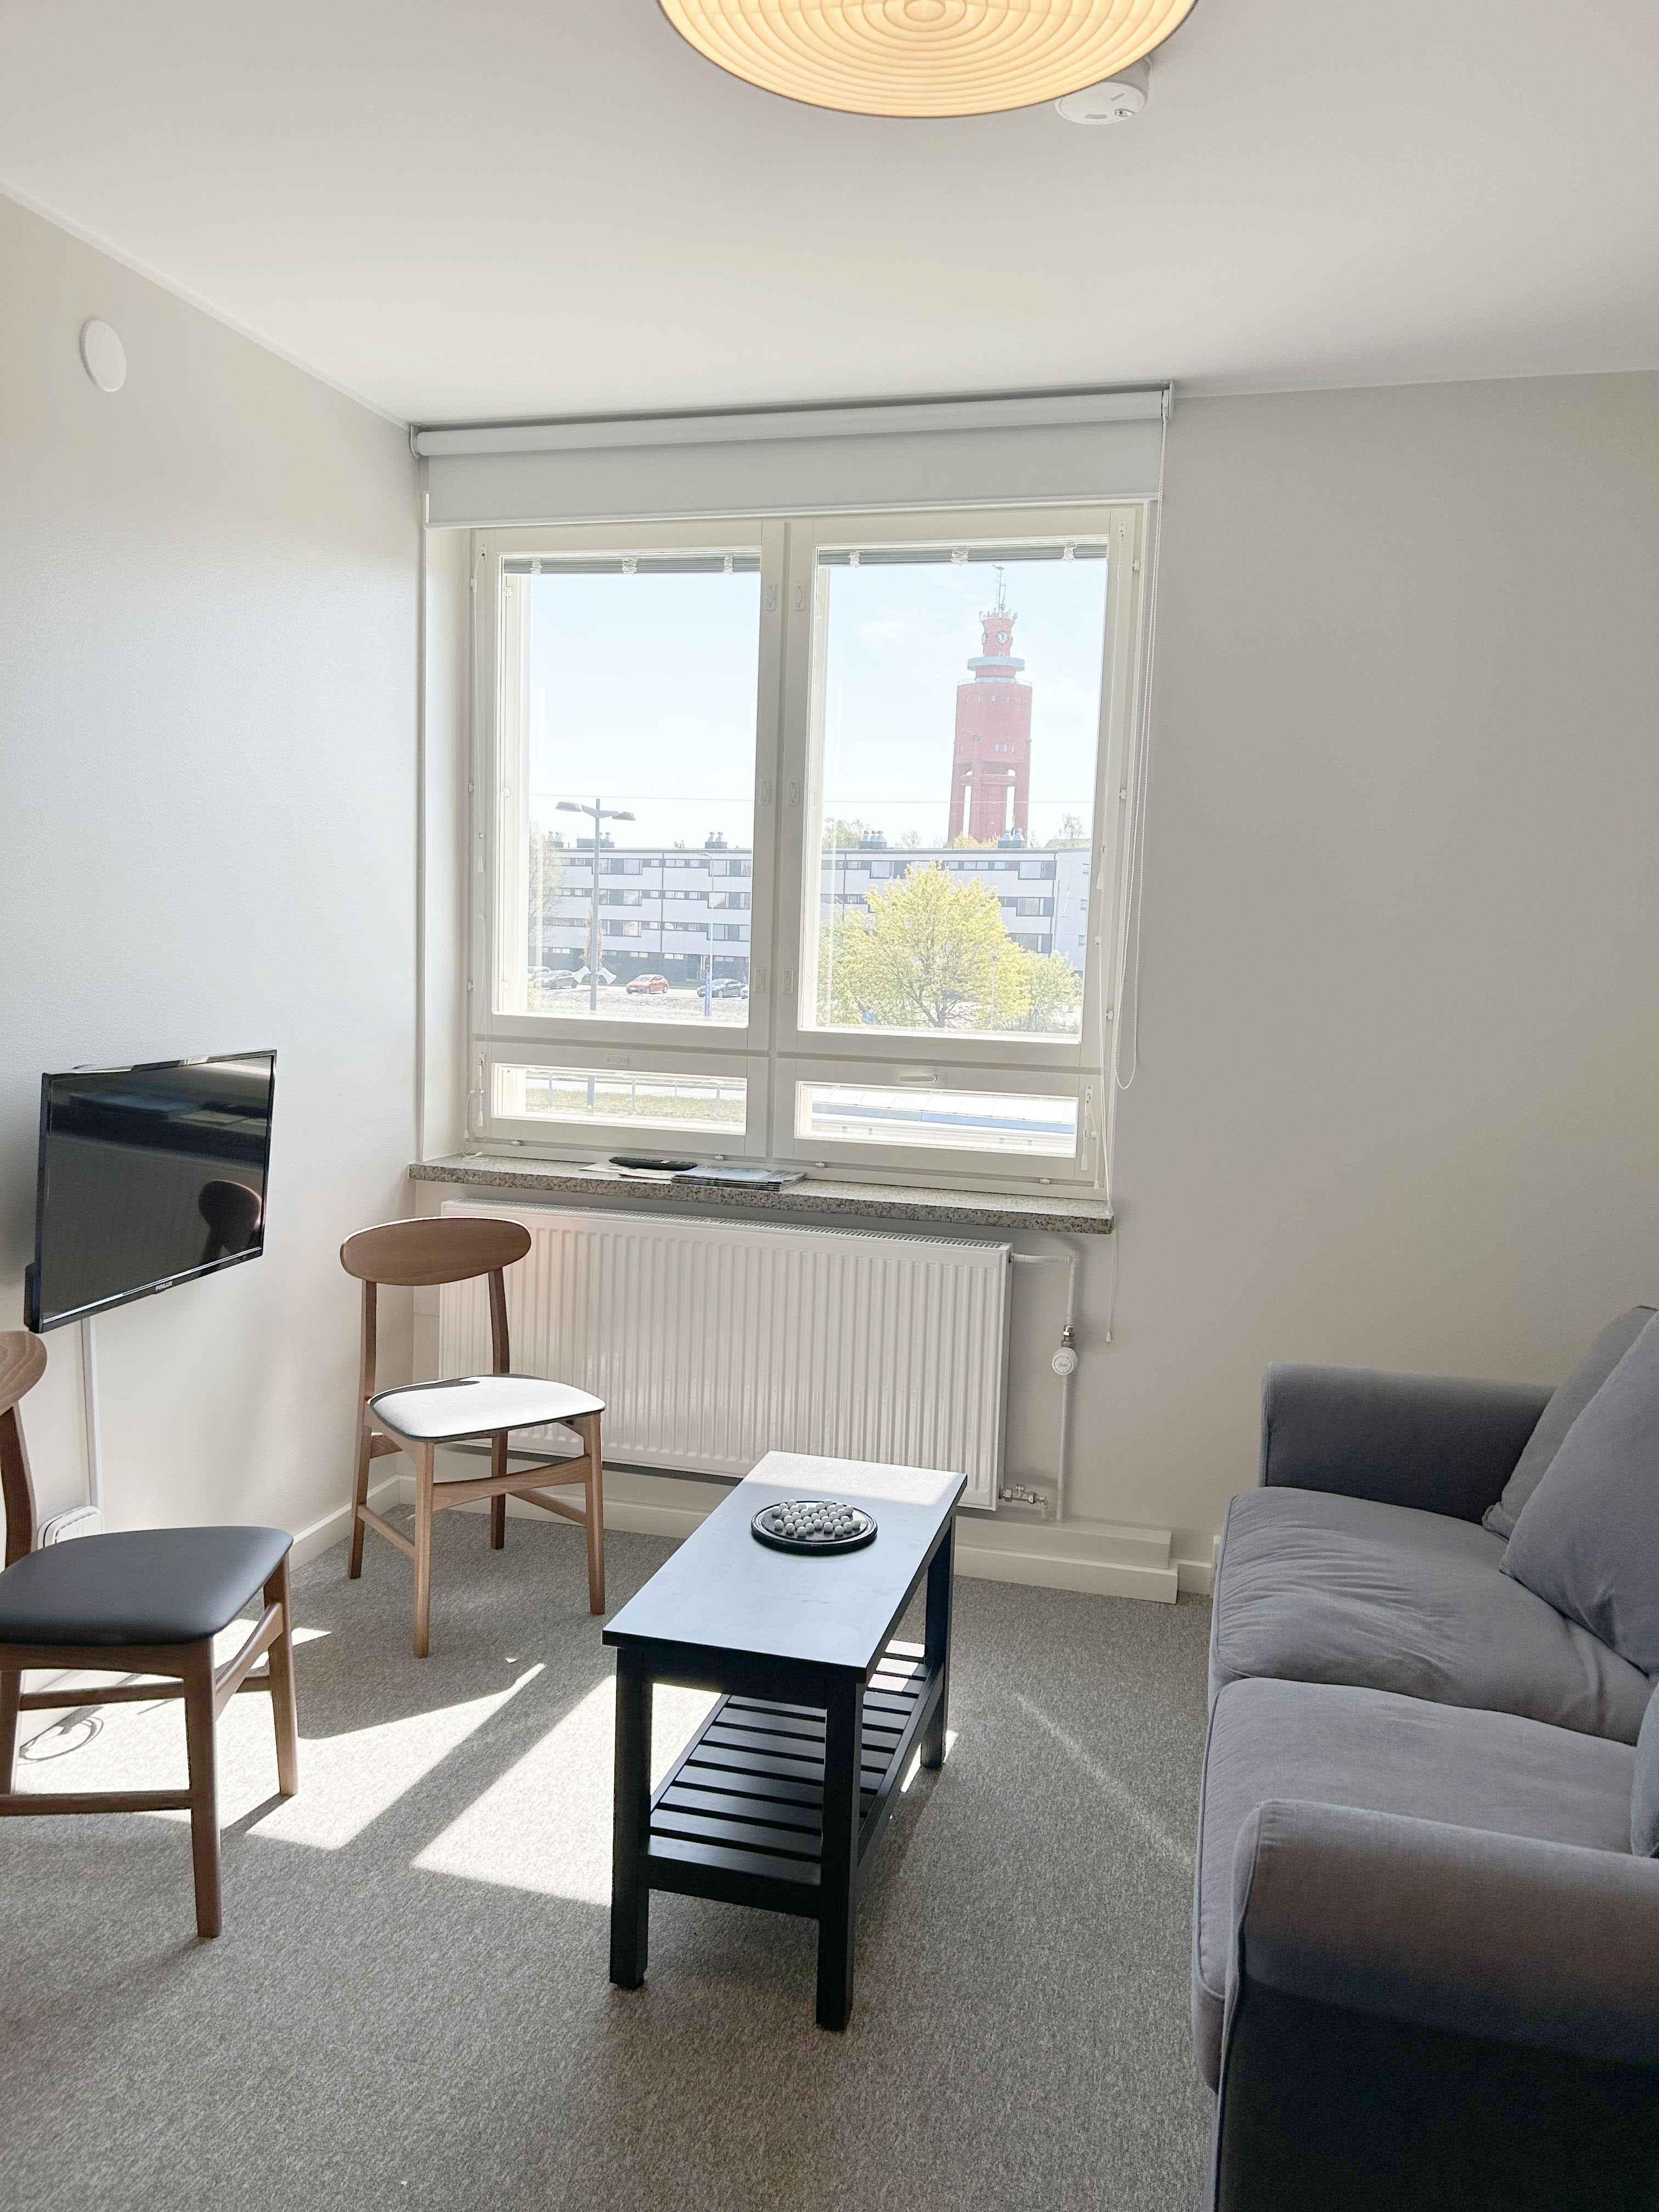 بدأت المدن الفنلندية في طلب تصاريح لمضيفي Airbnb "المحترفين"